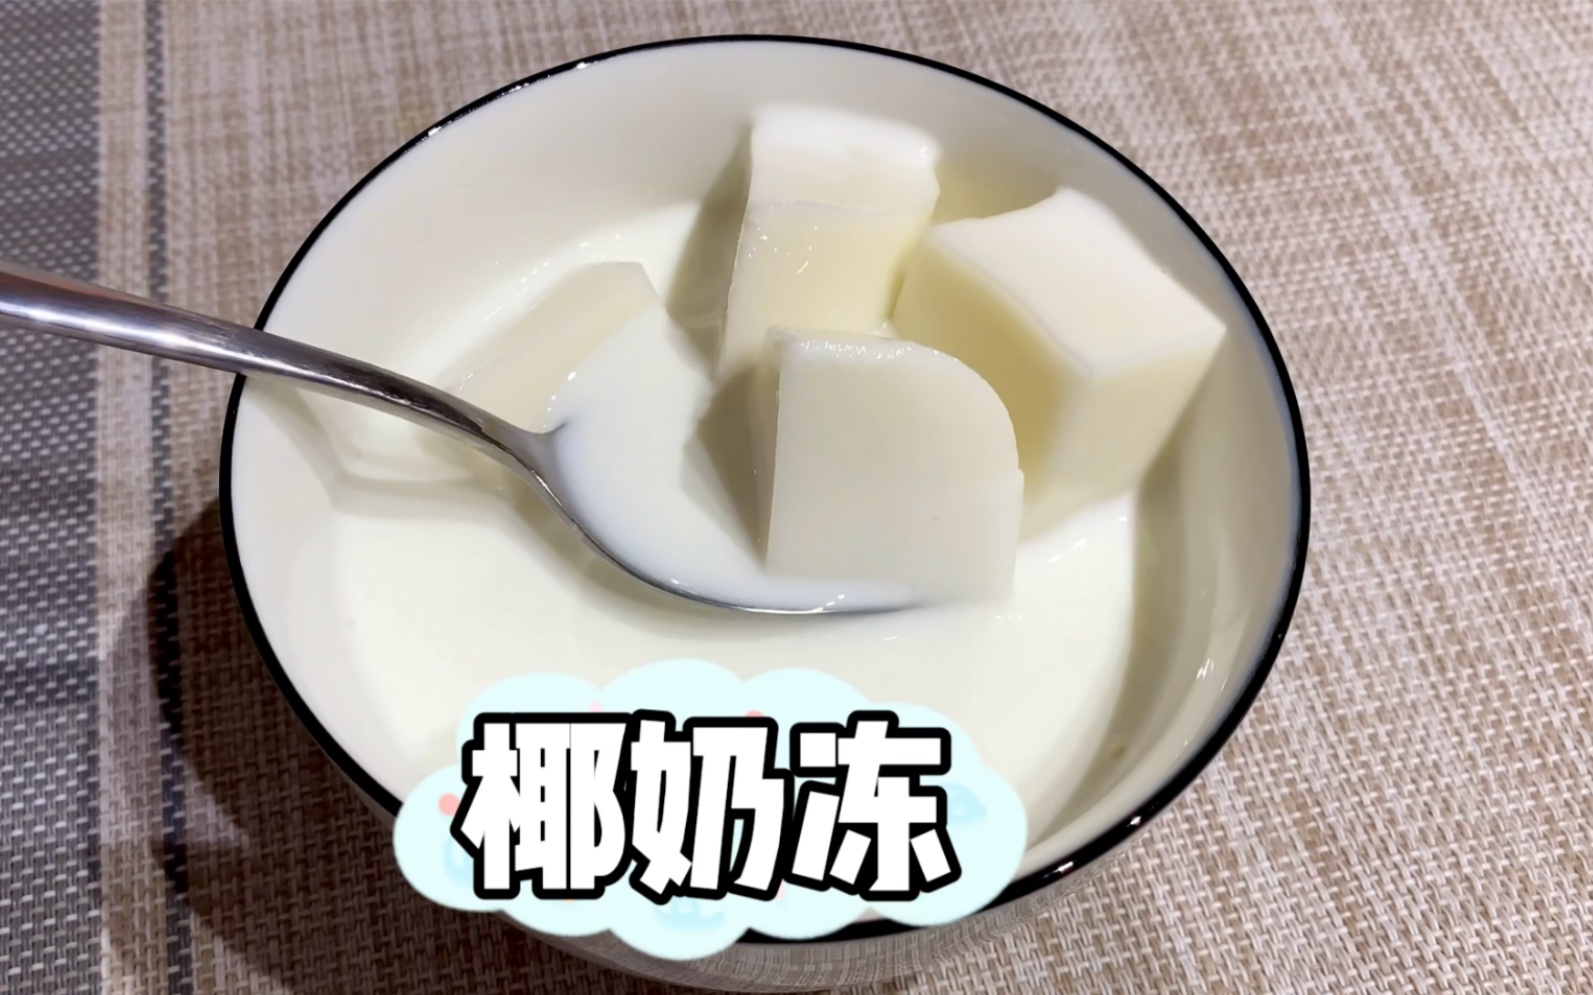 昨天的椰浆没用完，今天拿来做椰奶冻。QQ弹弹配牛奶味道好极了！